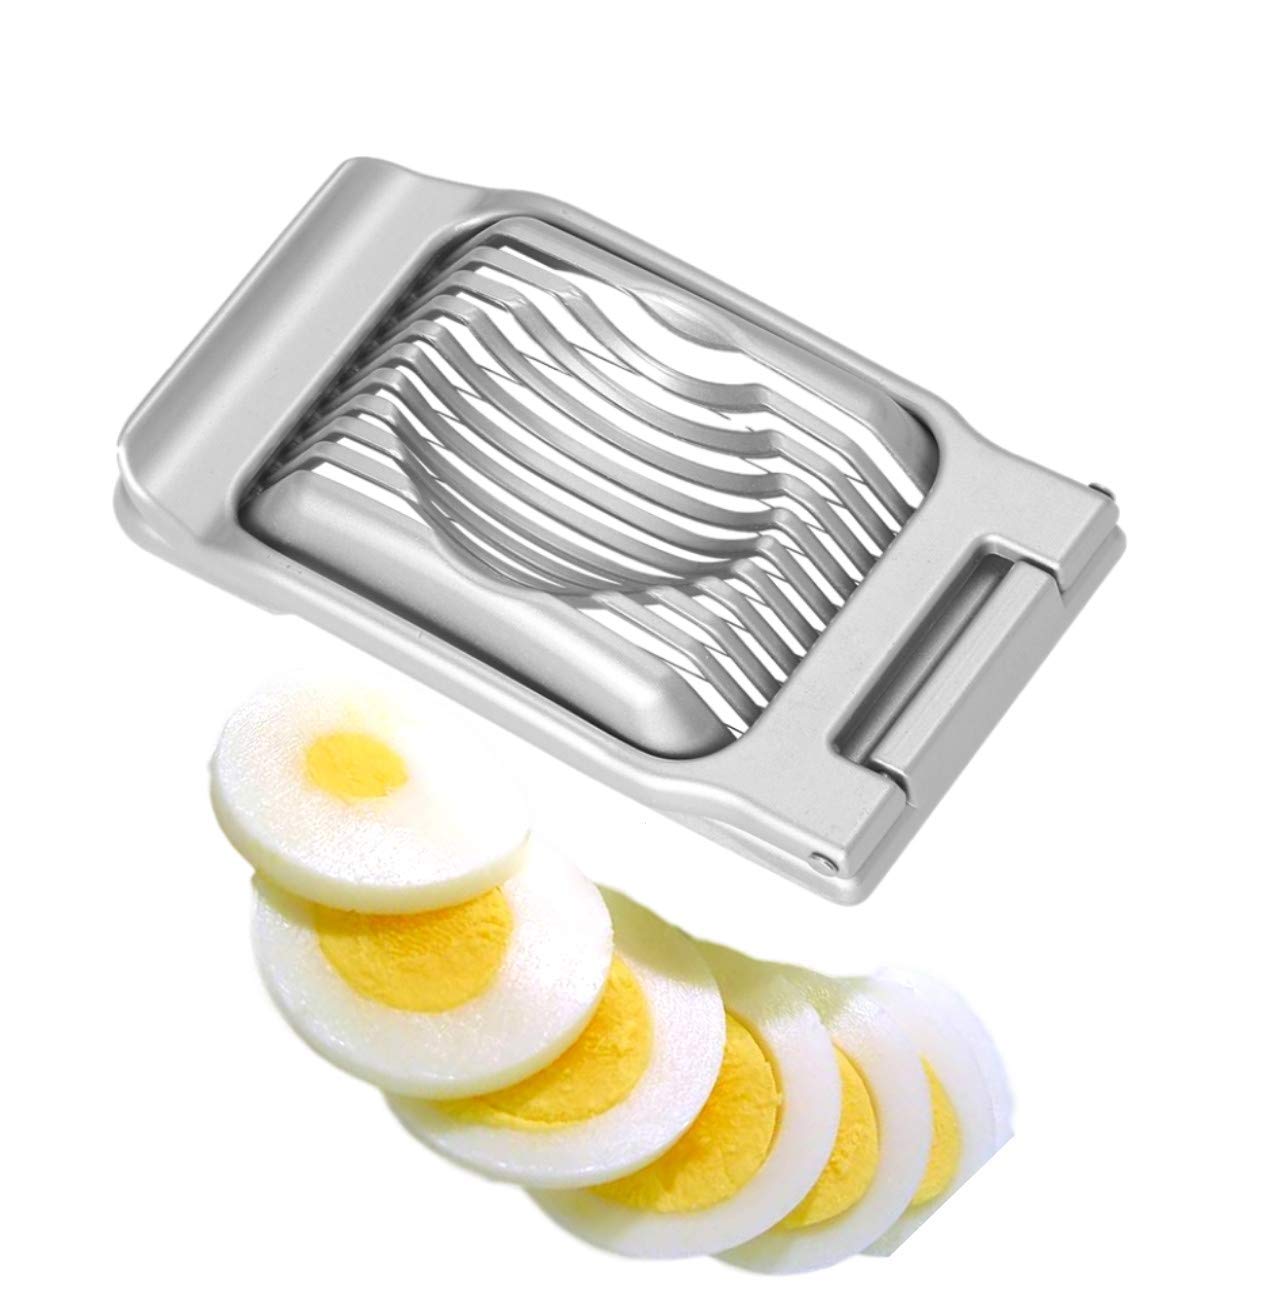 Aakihi Multipurpose Stainless Steel Wire Egg Slicer,Egg Slicer For